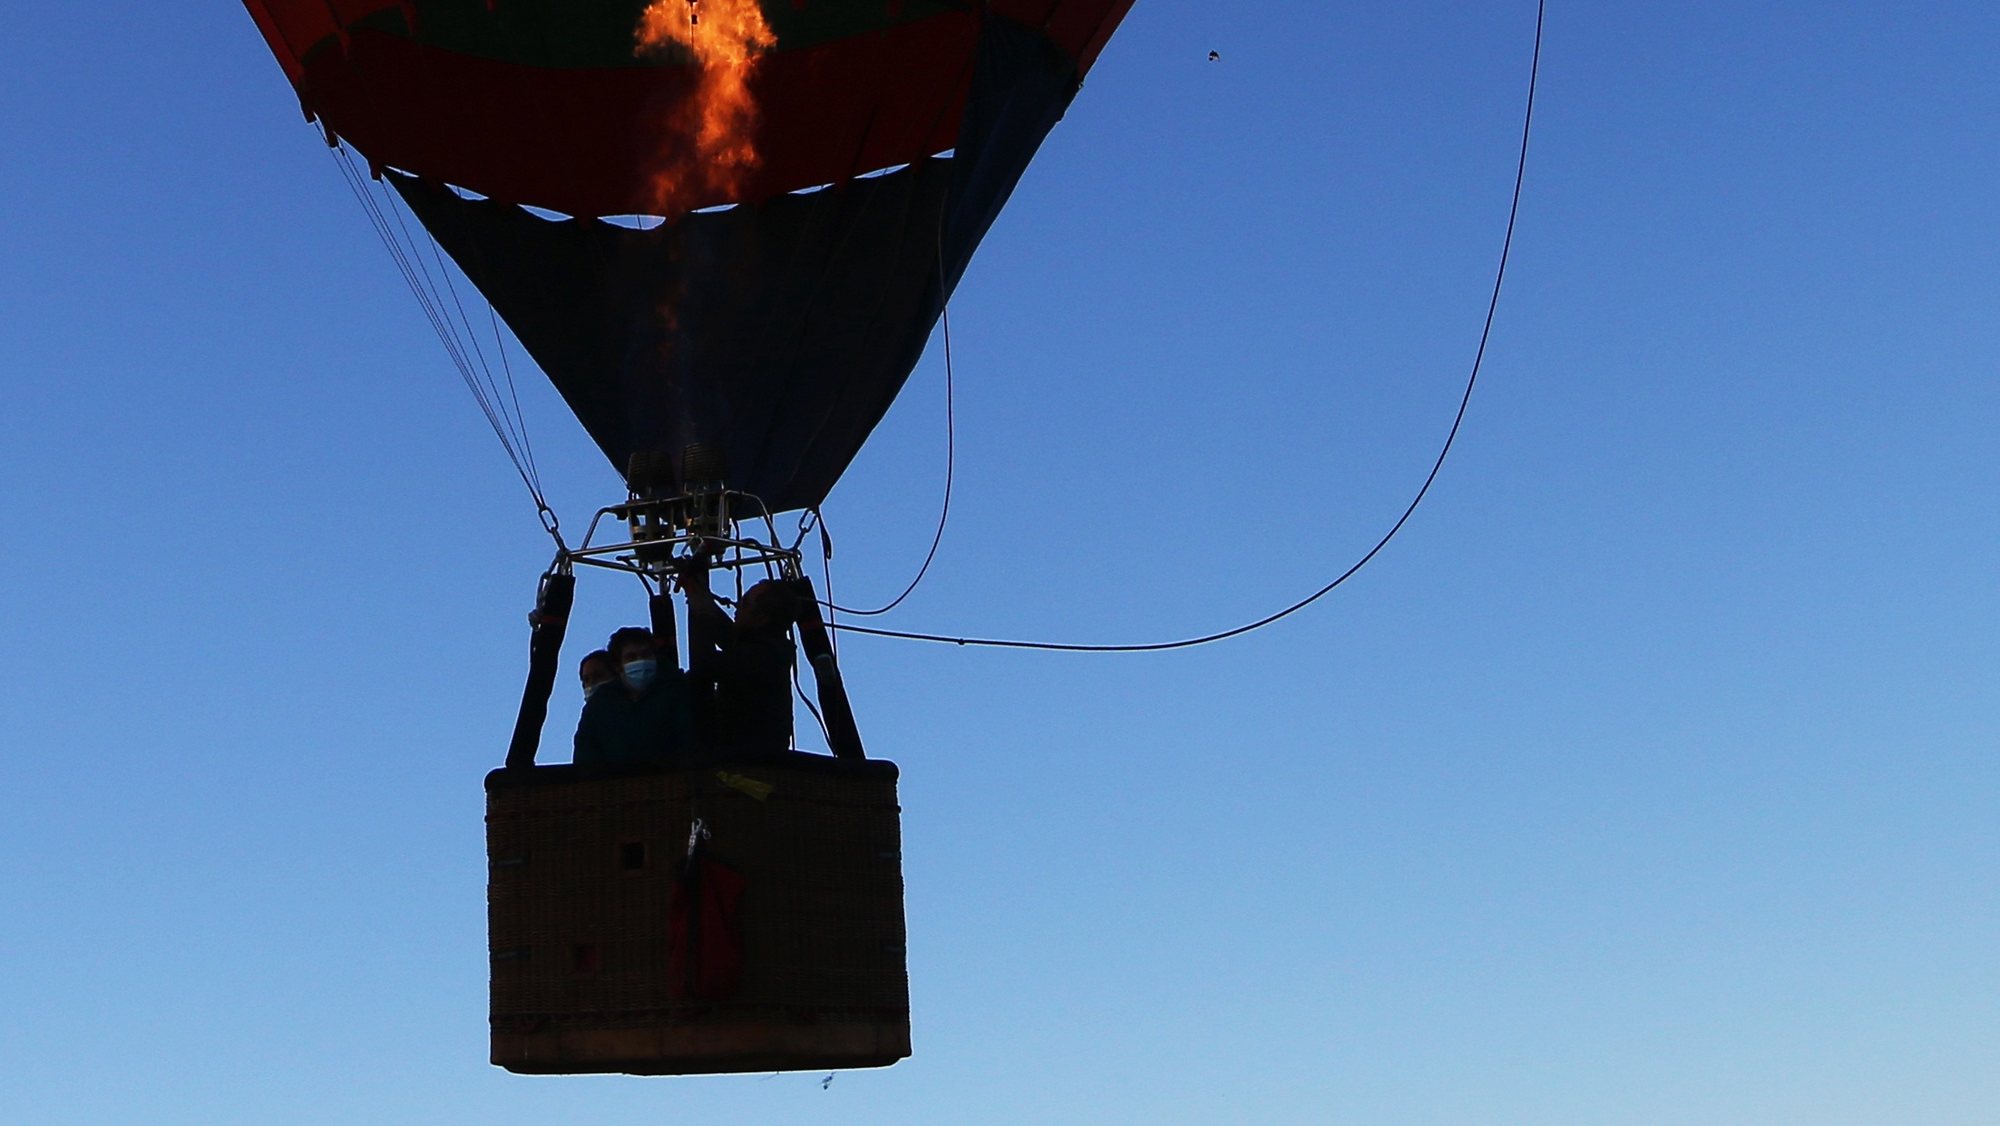 Participantes descolam para um voo em balão de ar quente, durante o 24º Festival Internacional Balões de Ar Quente que se realiza até dia 14 em várias localidades do norte alentejano, Alter do Chão, 09 de novembro de 2021. NUNO VEIGA/LUSA